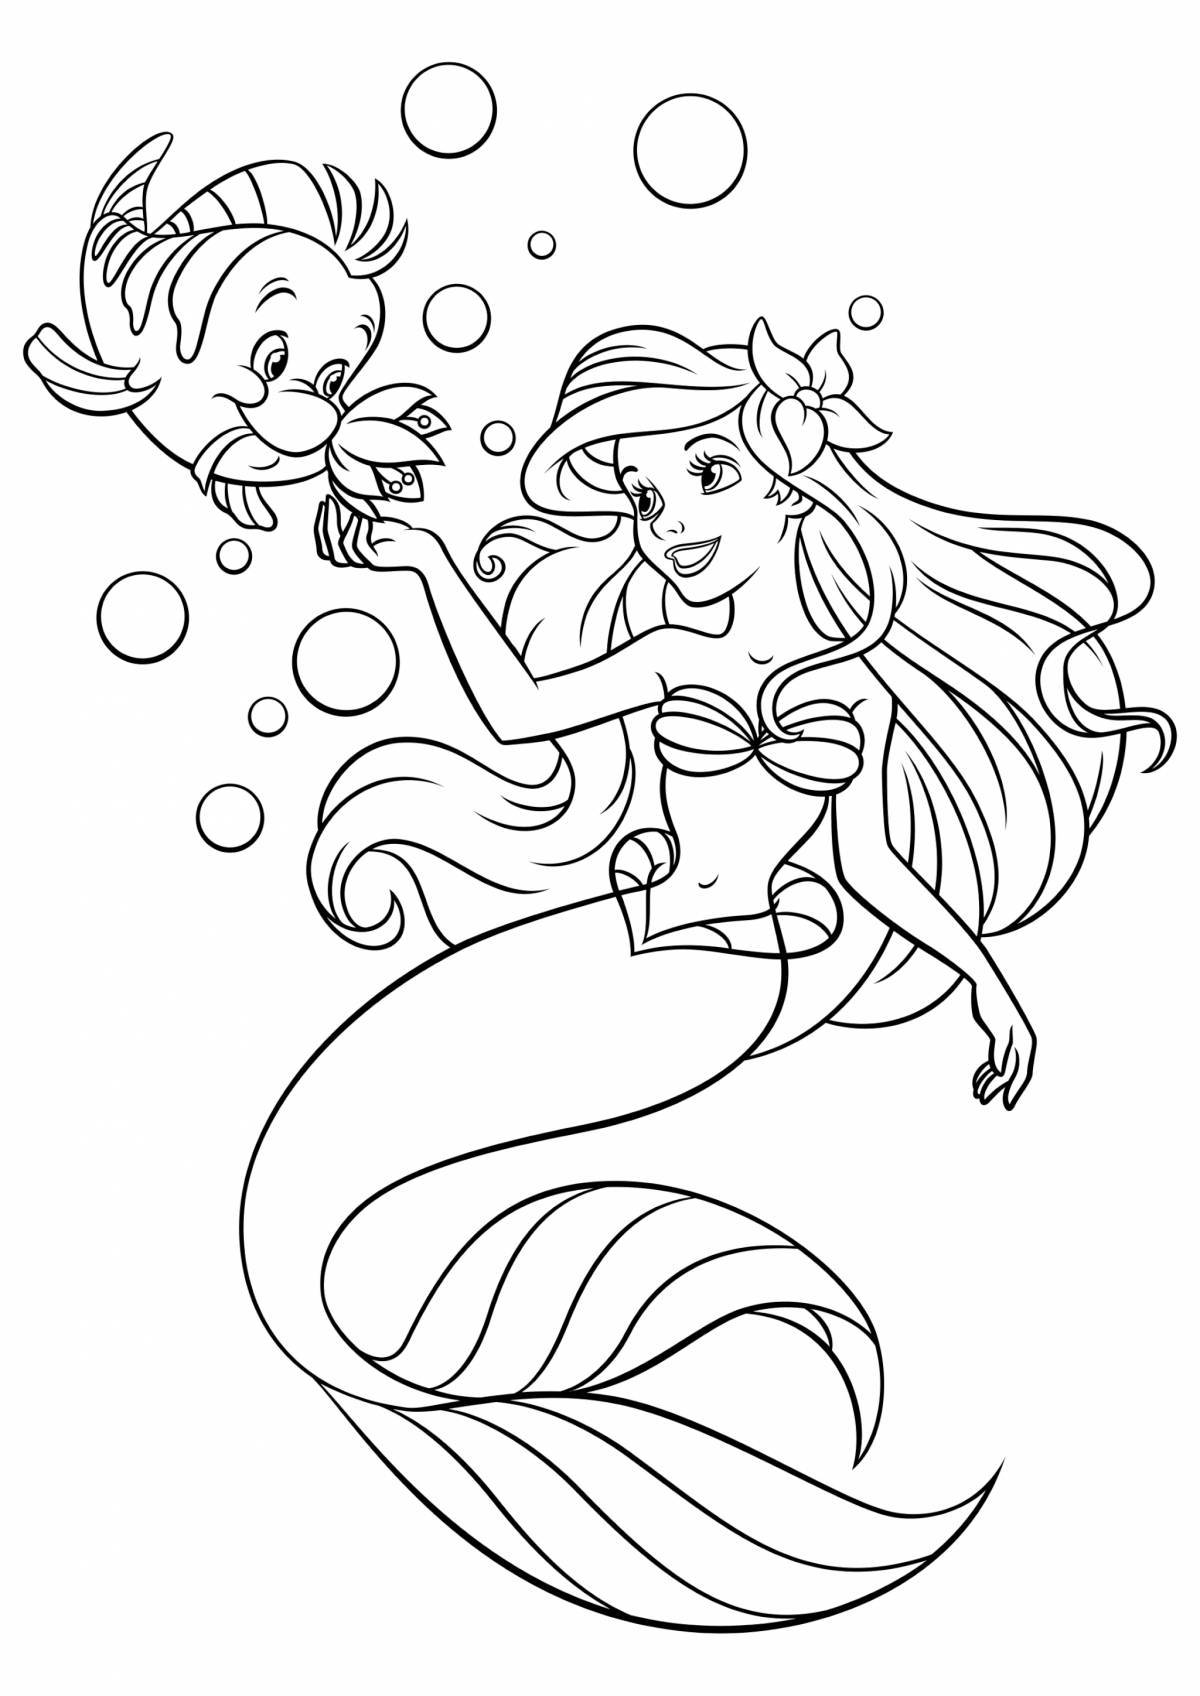 Fun coloring mermaid for kids